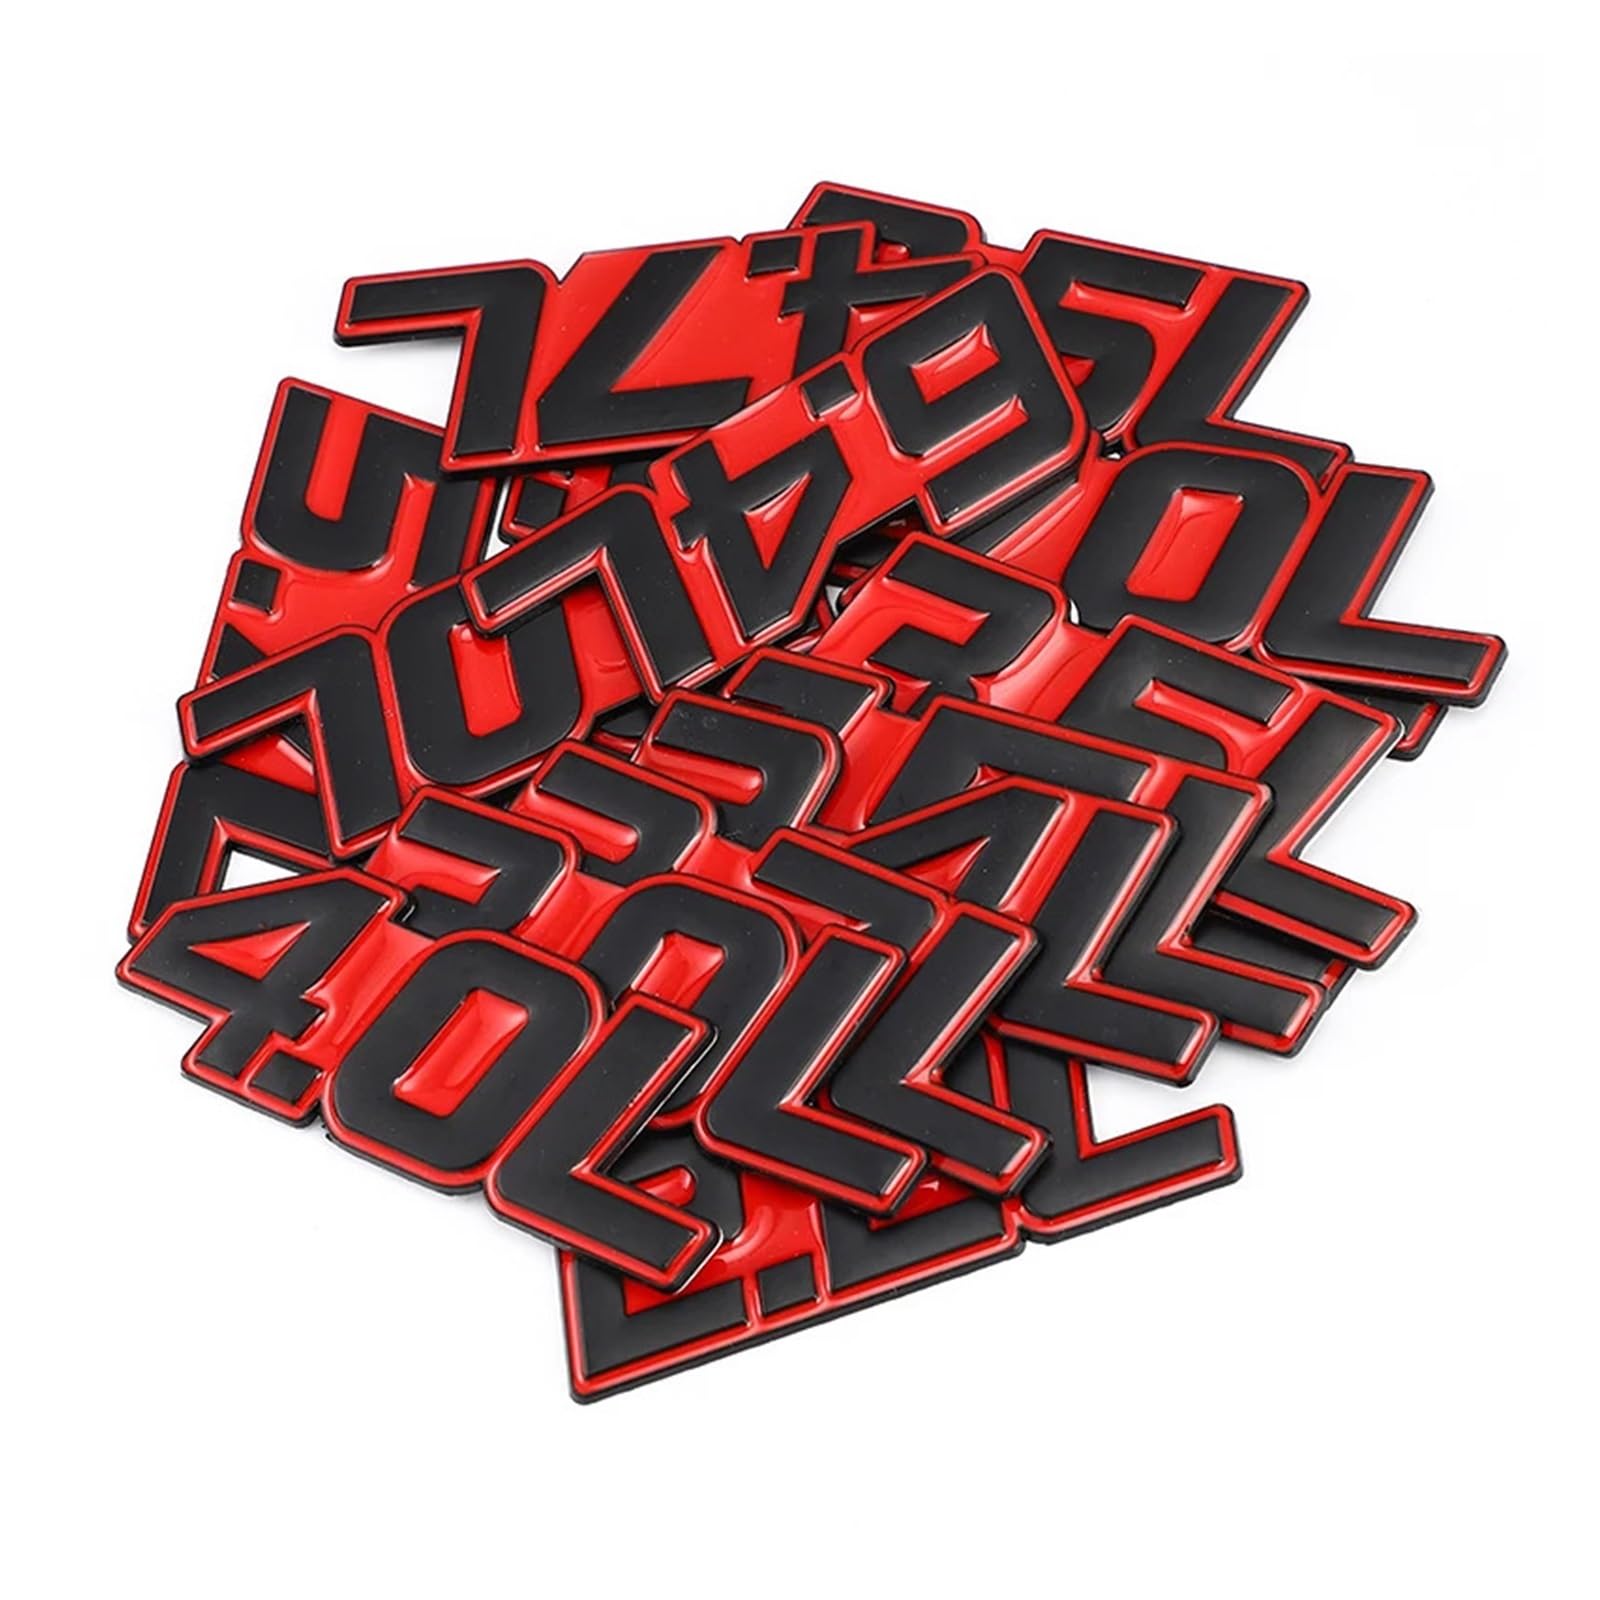 AQXYWQOL 3D Auto Aufkleber Metall L Logo Auto Styling Metall Abzeichen Emblem Schwanz Aufkleber Motorrad Farbe ist konstant, verblasst nicht und beschädigt(Red Sticker,2.3L) von AQXYWQOL